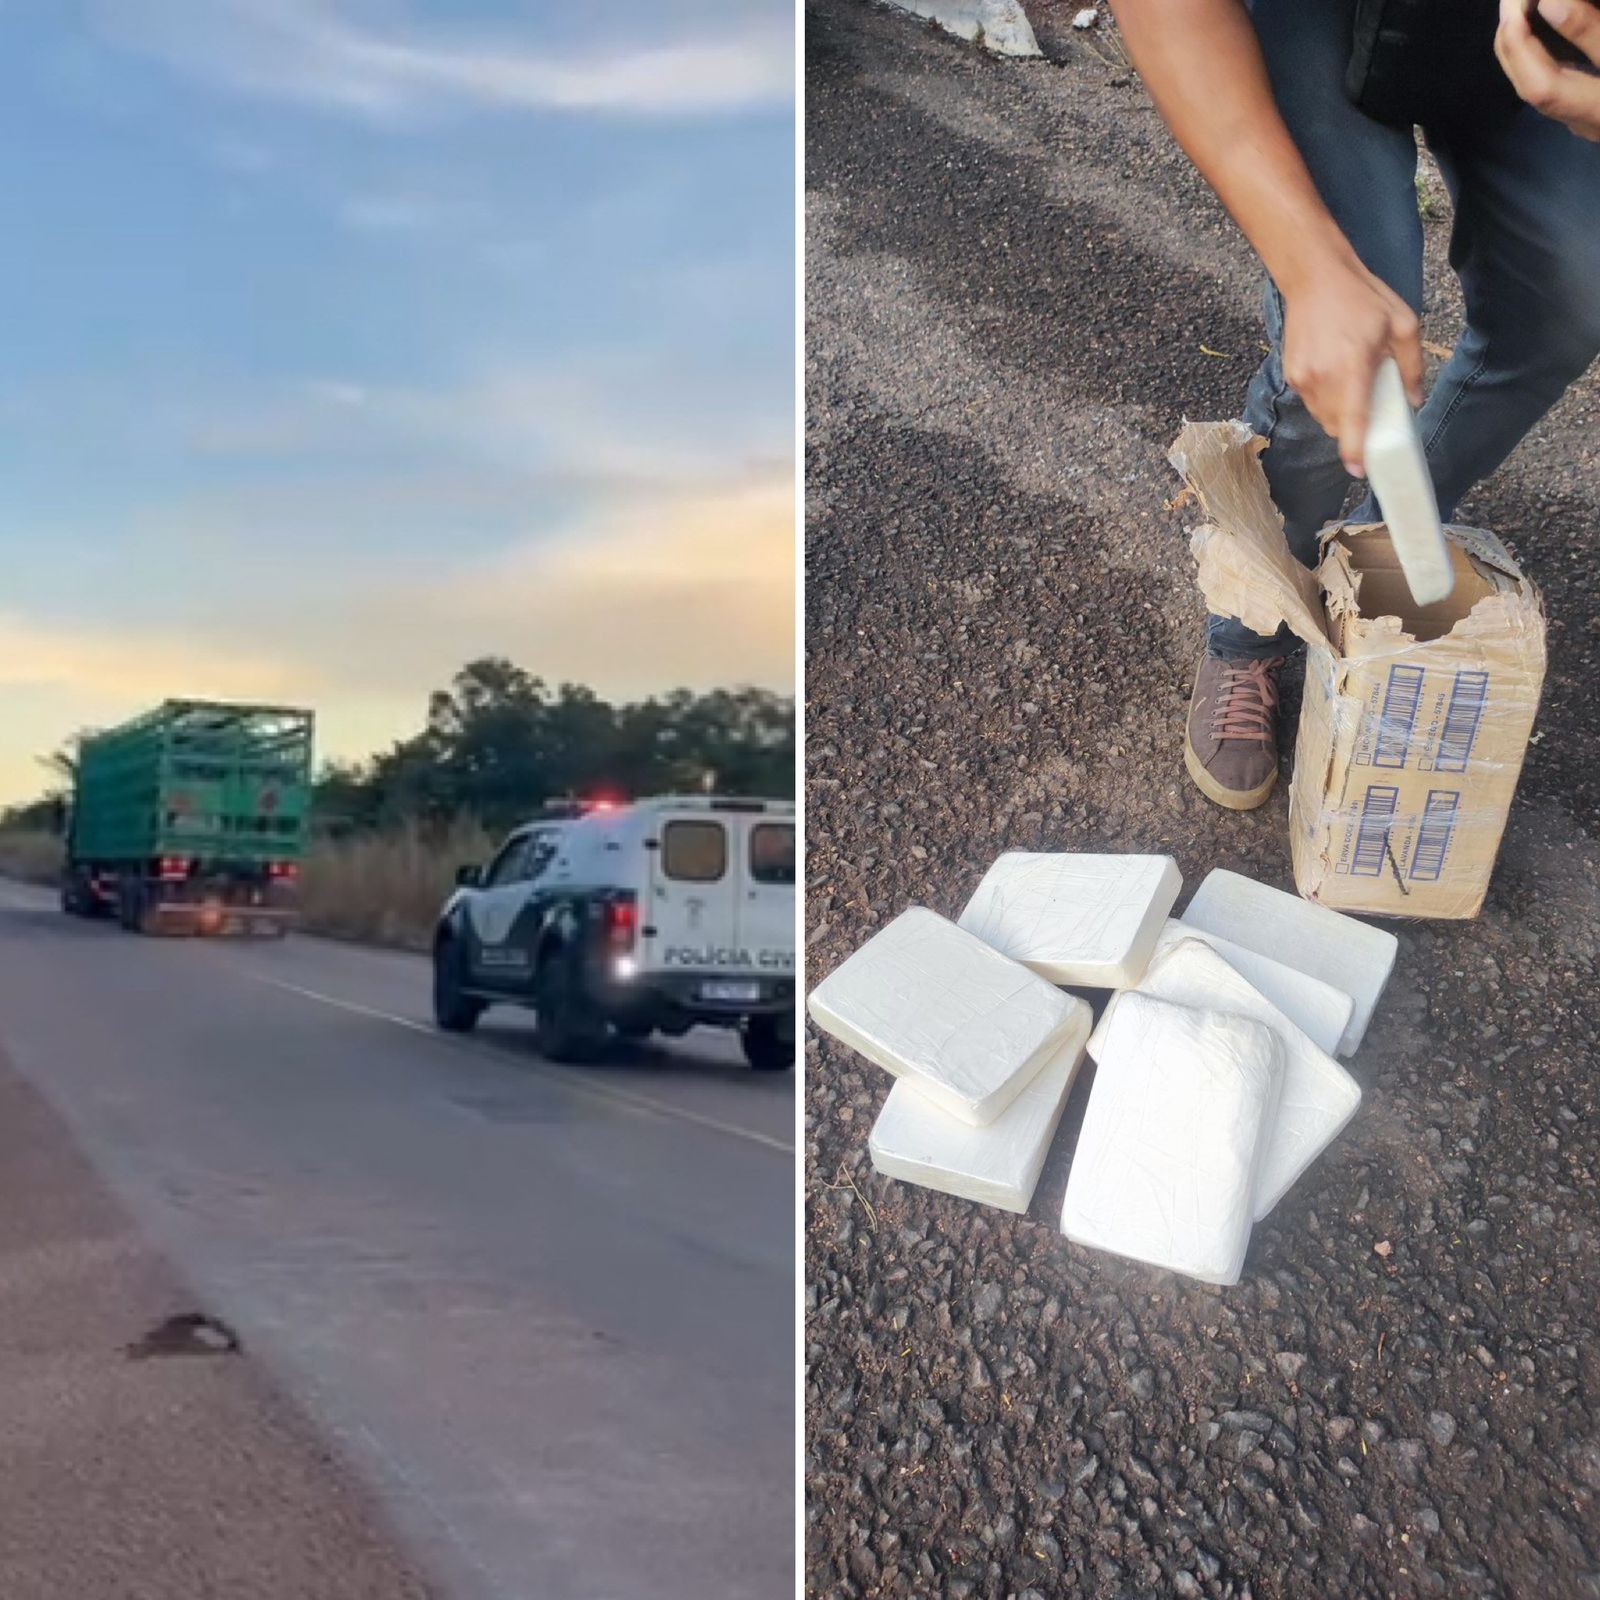 Dois homens são flagrados com 10 kg de pasta base de cocaína escondidos caminhão com carga de botijões